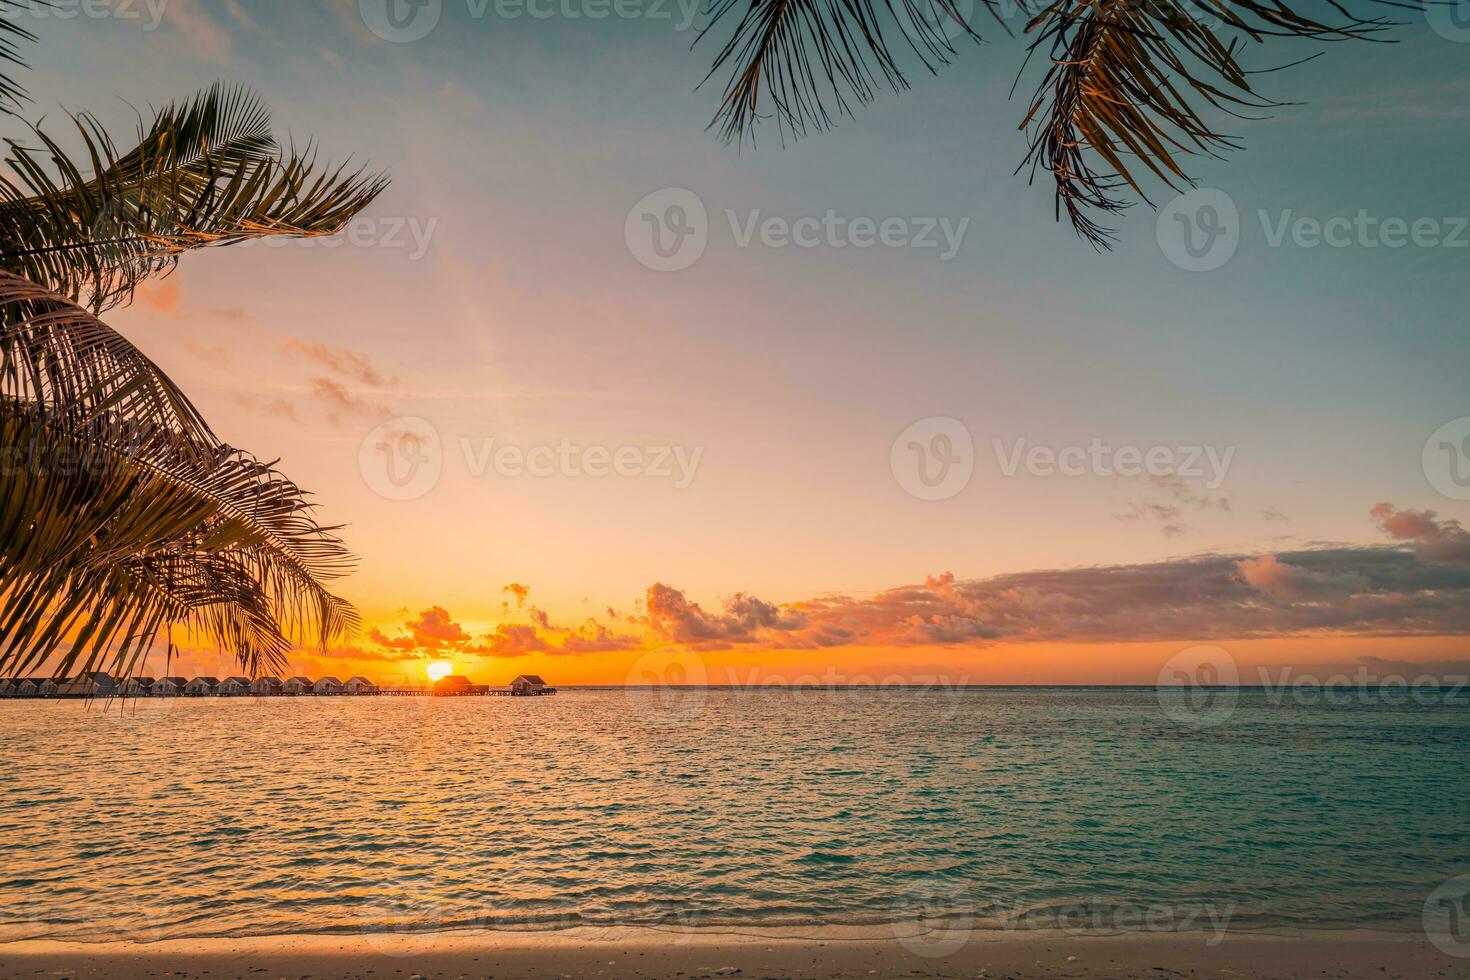 silueta de palmeras y horizonte marino. hermosa puesta de sol en el fondo de la playa de la costa de la isla tropical para viajar en tiempo de relajación de vacaciones. villas de agua en maldivas, vacaciones exóticas. amanecer romantico foto